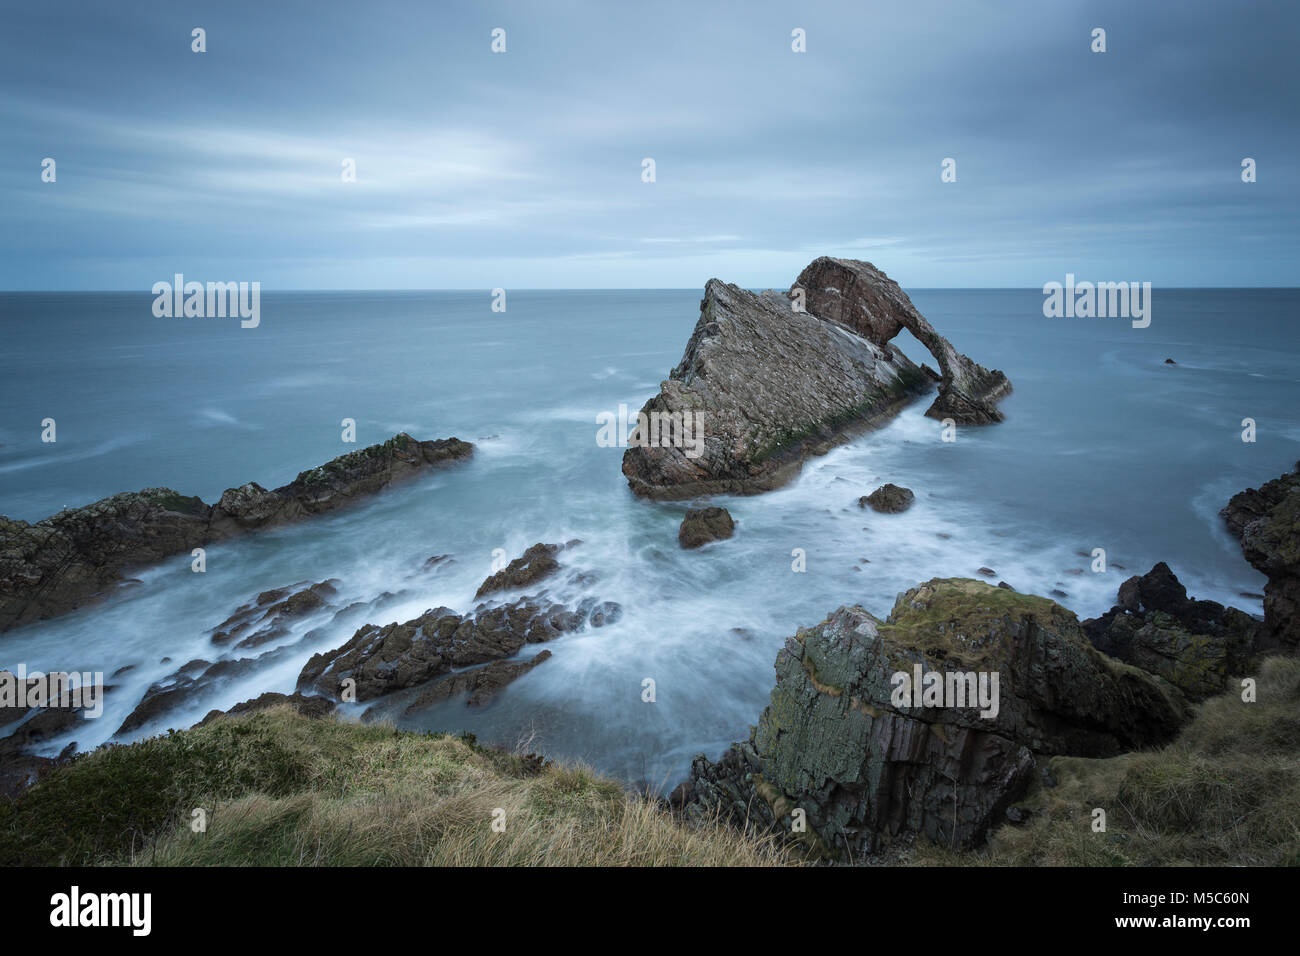 Bow Fiddle Rock near Portknockie, Moray, Scotland, UK. Long exposure image Stock Photo